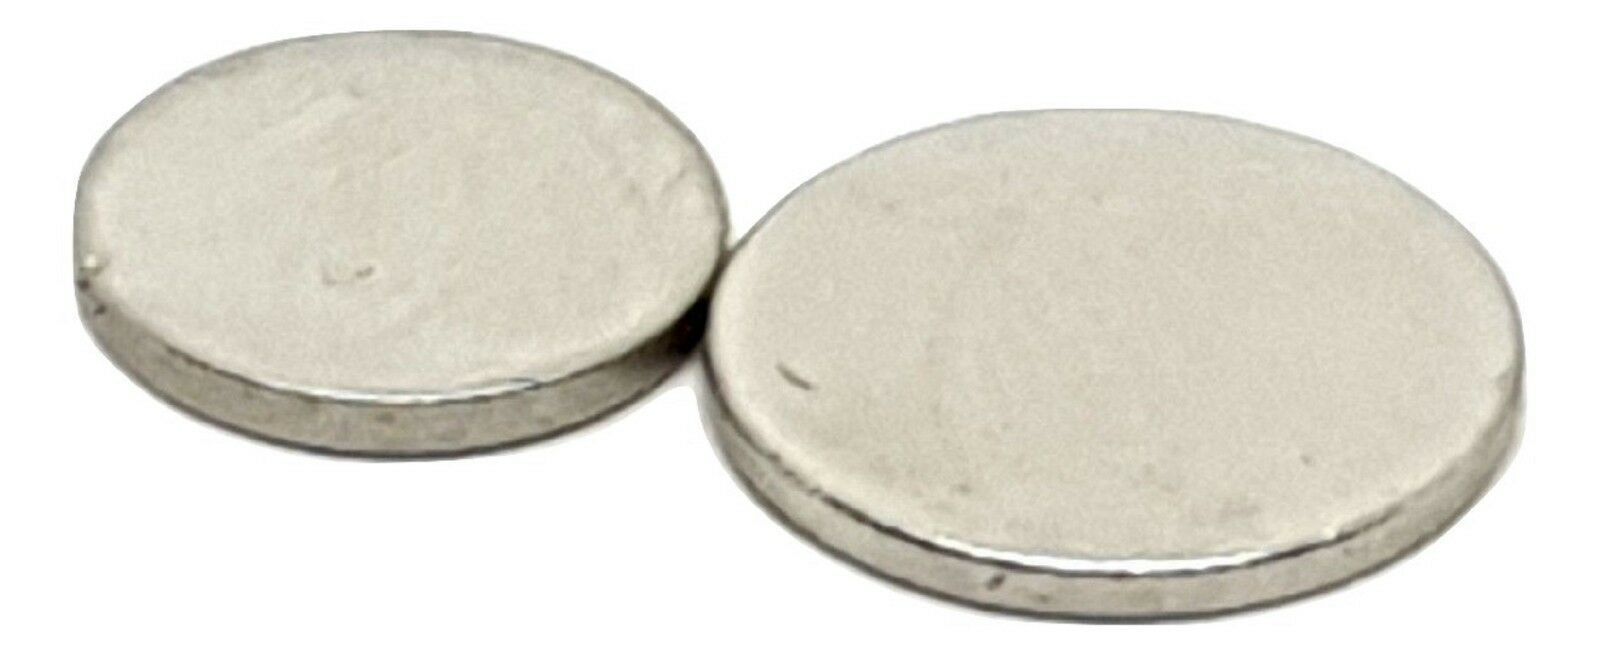 Münze Neodym Selten Erde Test Magnet Silber/Gold Test Starke Magnete